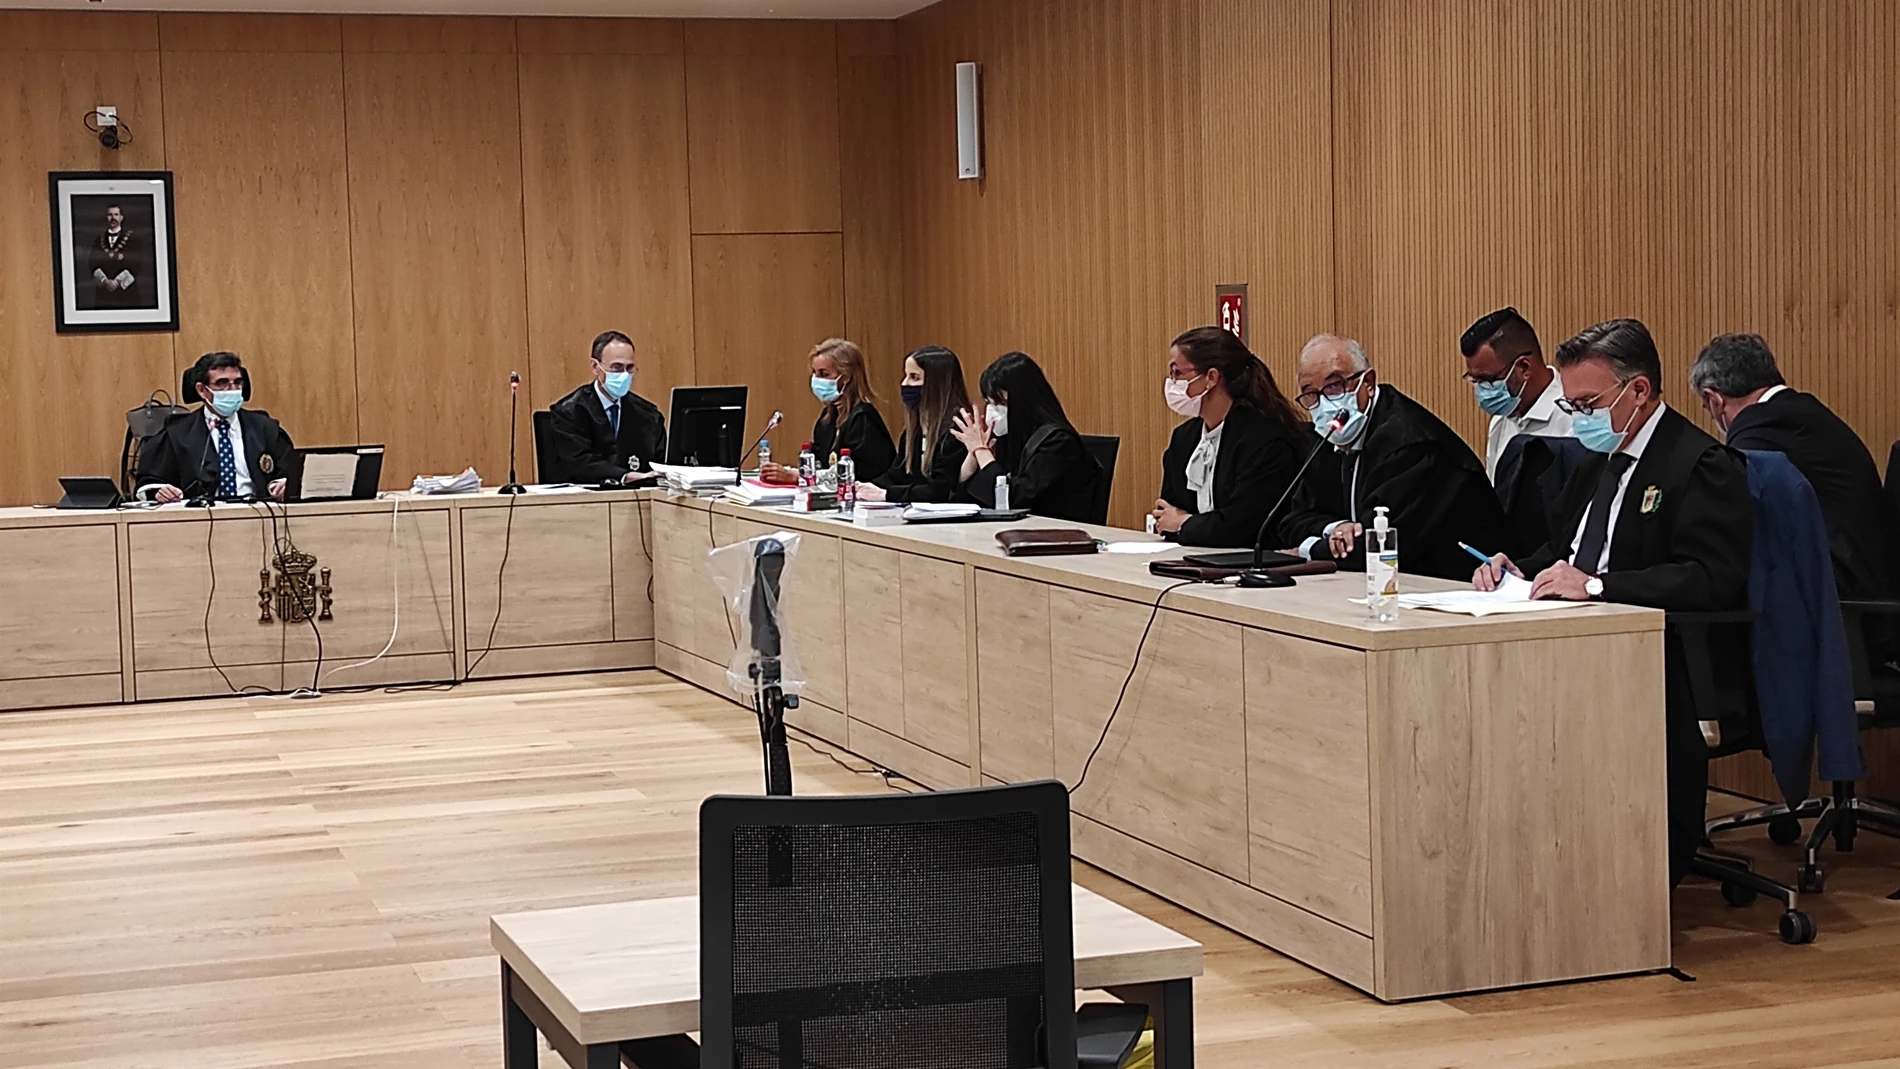 El presidente del jurado, la fiscal, la acusación y las defensas, durante el juicio. A la derecha, uno de los acusados